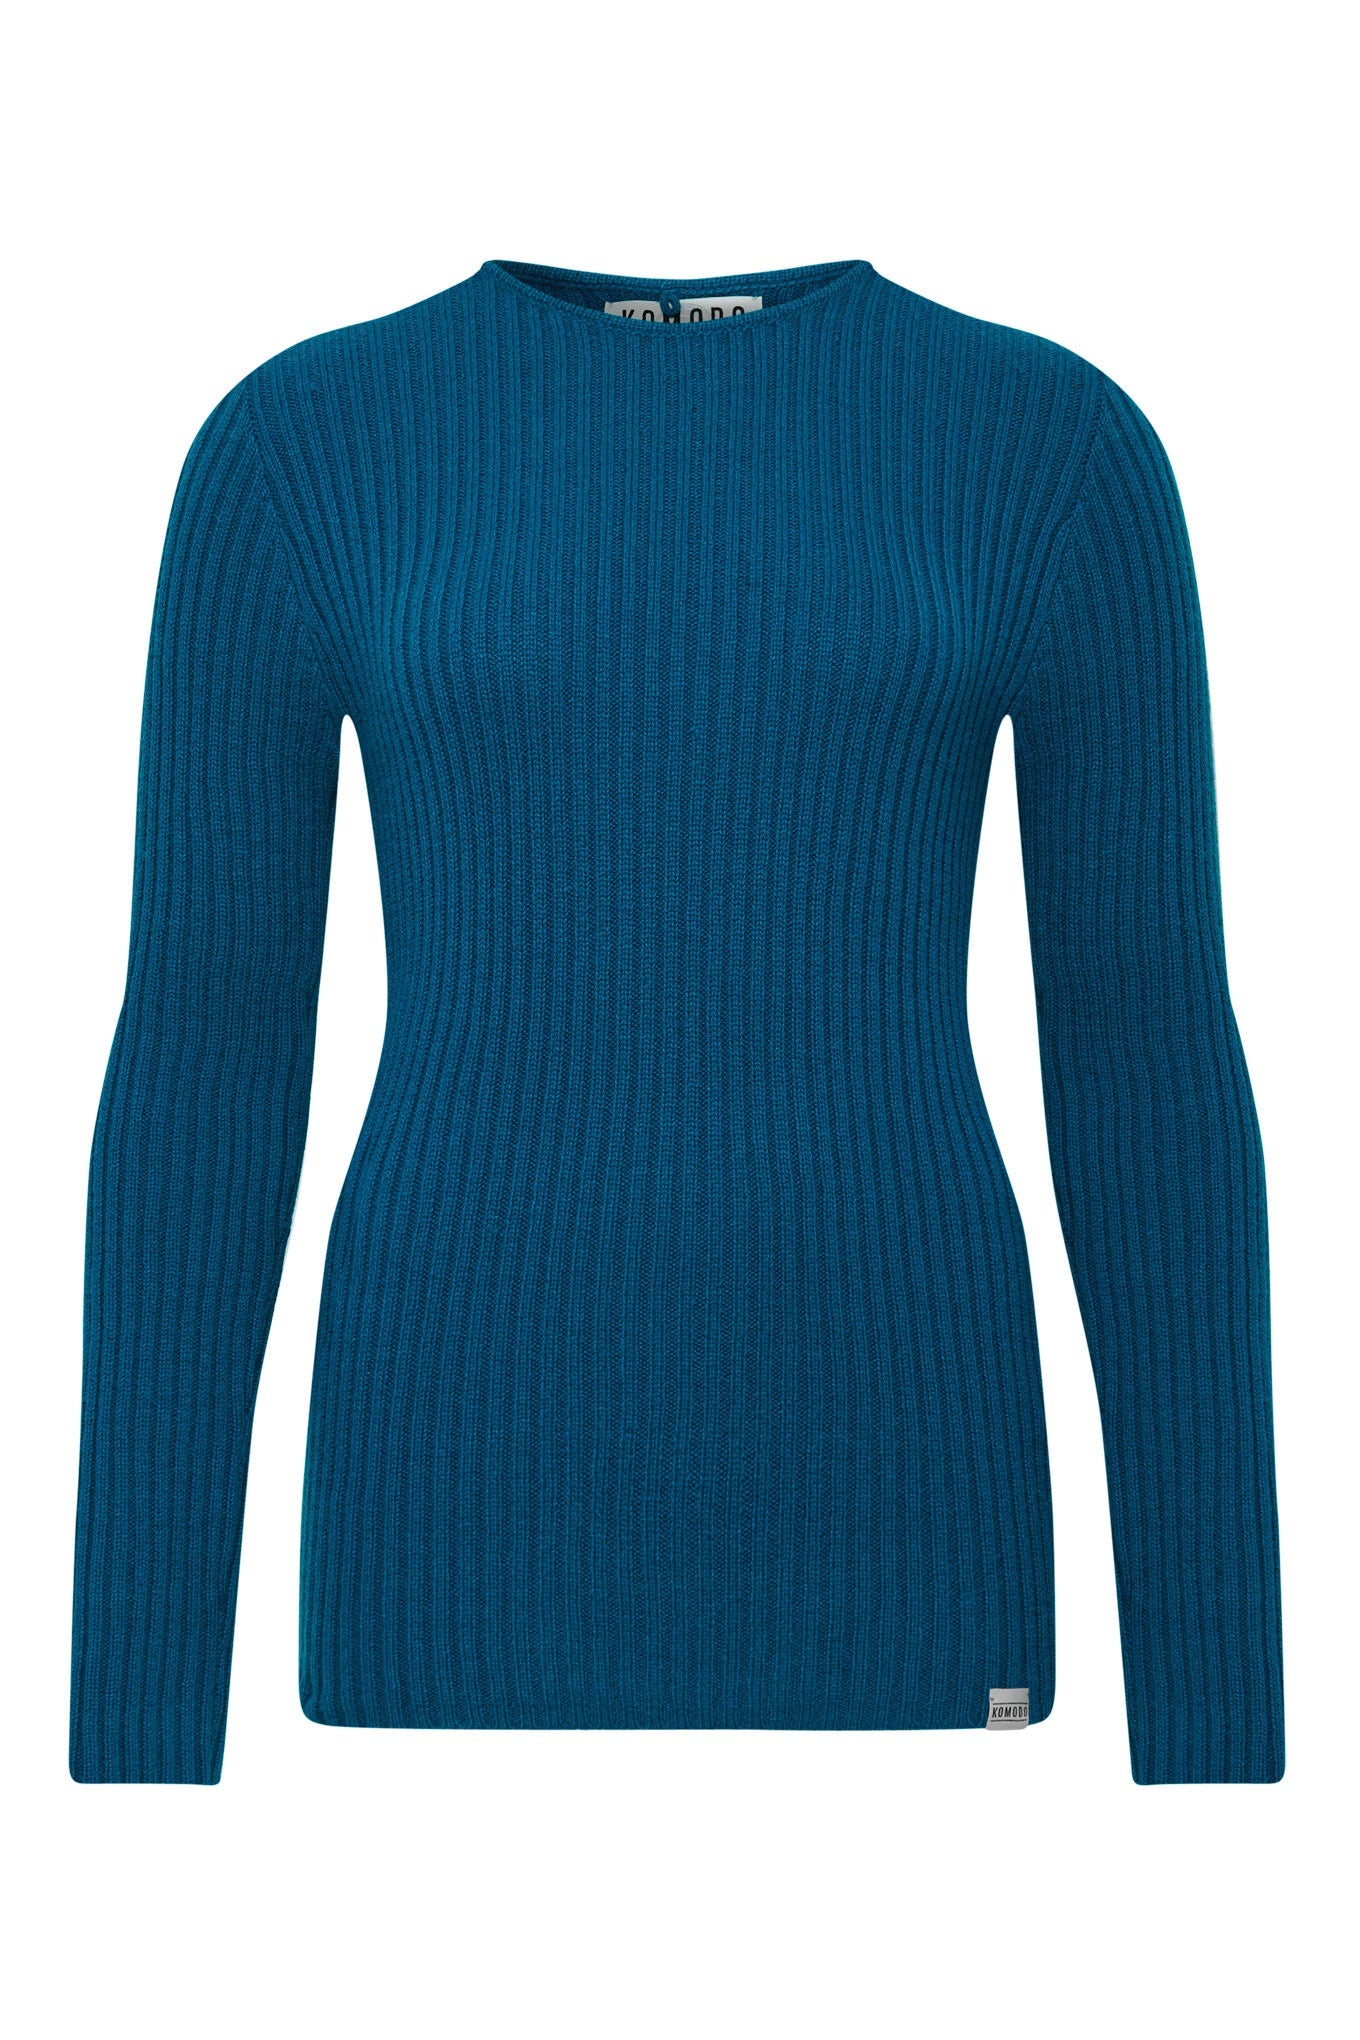 Blauer Pullover MIMI aus 100% Kaschmir von Komodo